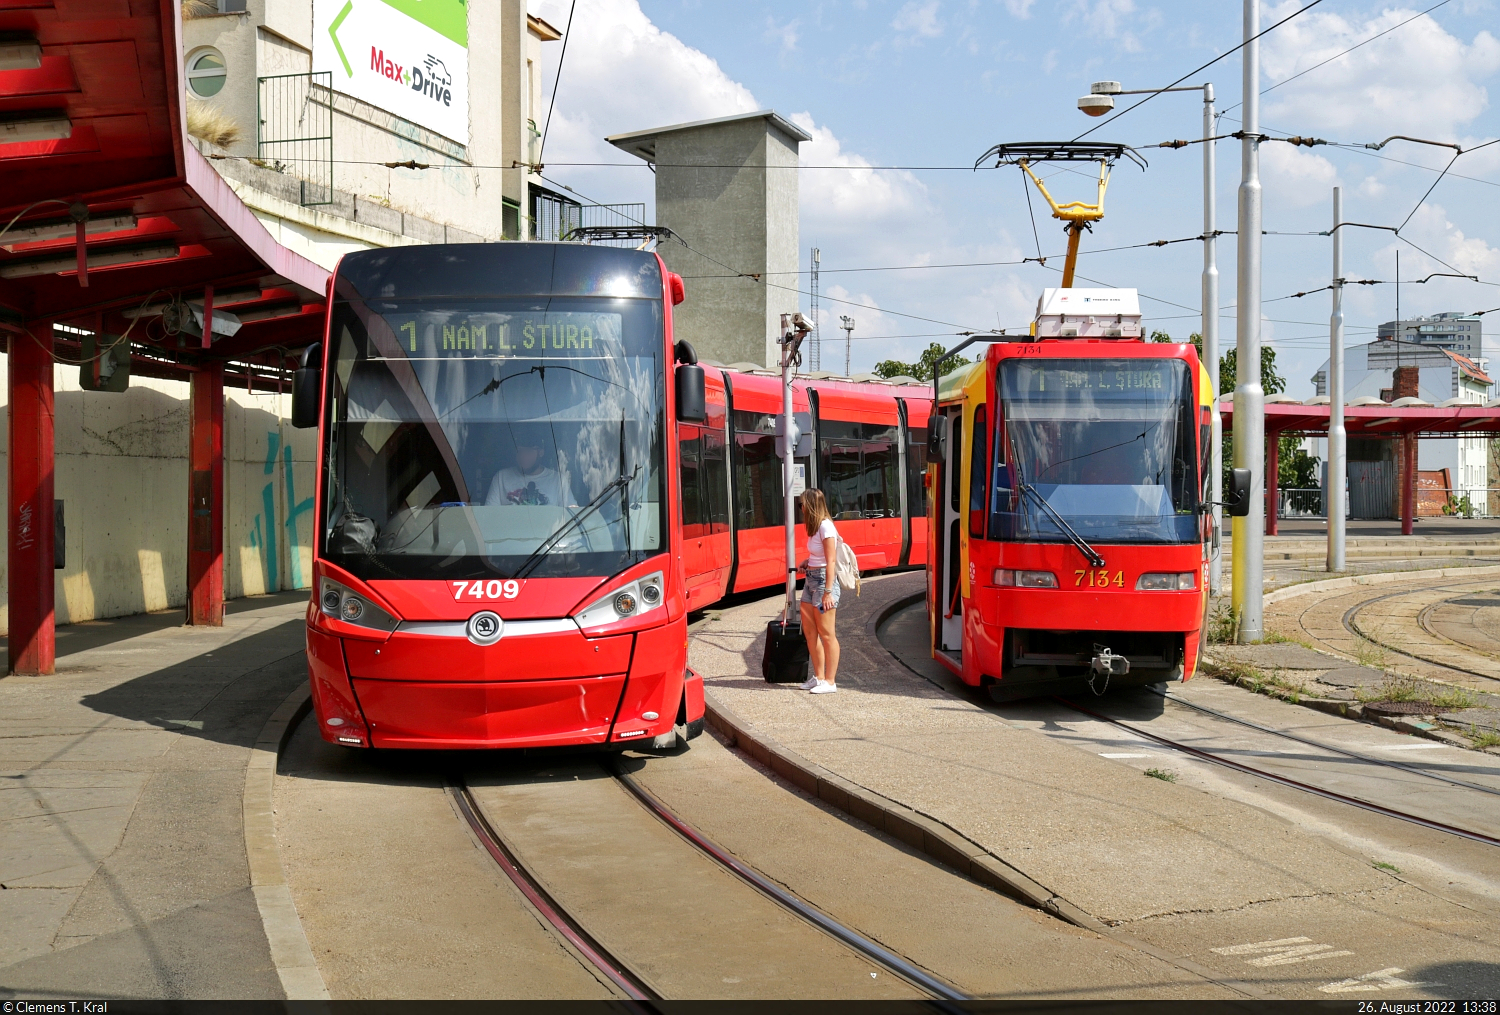 Škoda ForCity Plus 29 T, Wagen 7409, startet seine Rundreise in Bratislava hl.st. (SK), während der folgende Kurs mit Wagen 7134 vom Typ Tatra K2 daneben wartet.

🧰 Dopravný podnik Bratislava, a.s. (DPB)
🚋 Linie 1 Hlavná Stanica–Nám. Ľ. Štúra–Hlavná Stanica
🕓 26.8.2022 | 13:38 Uhr